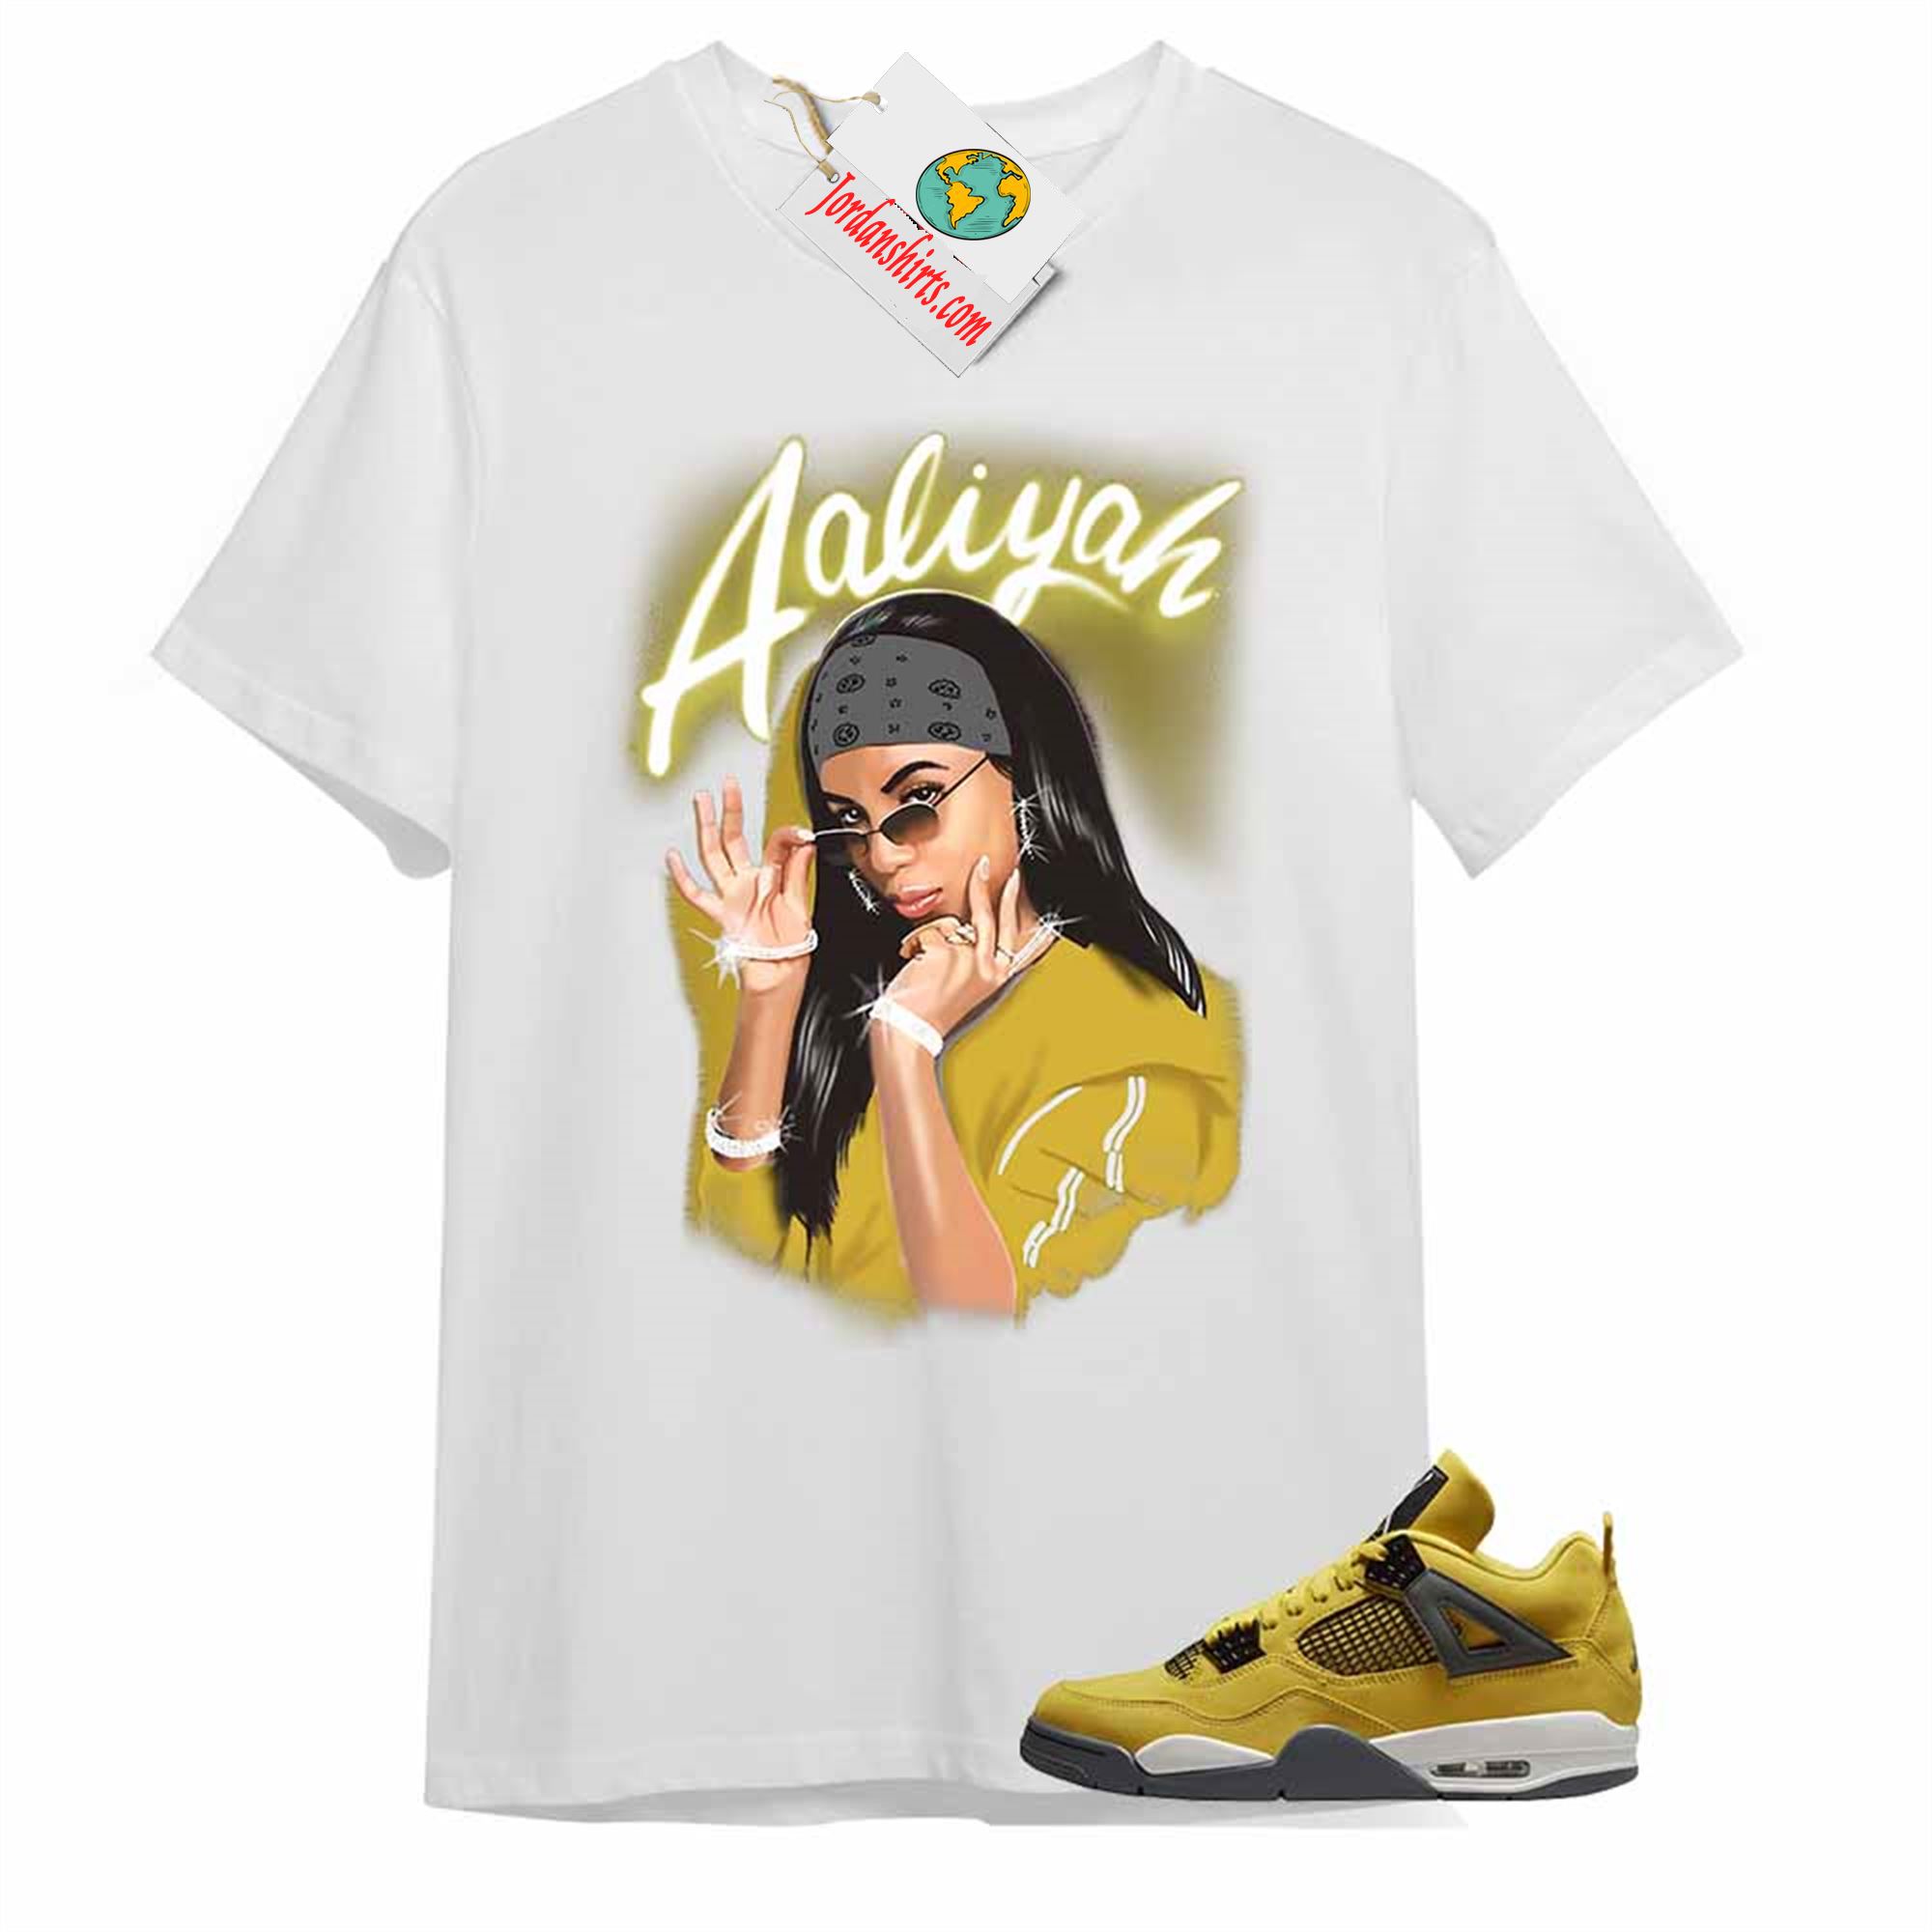 Jordan 4 Shirt, Aaliyah Airbrush White T-shirt Air Jordan 4 Lightning 4s Size Up To 5xl